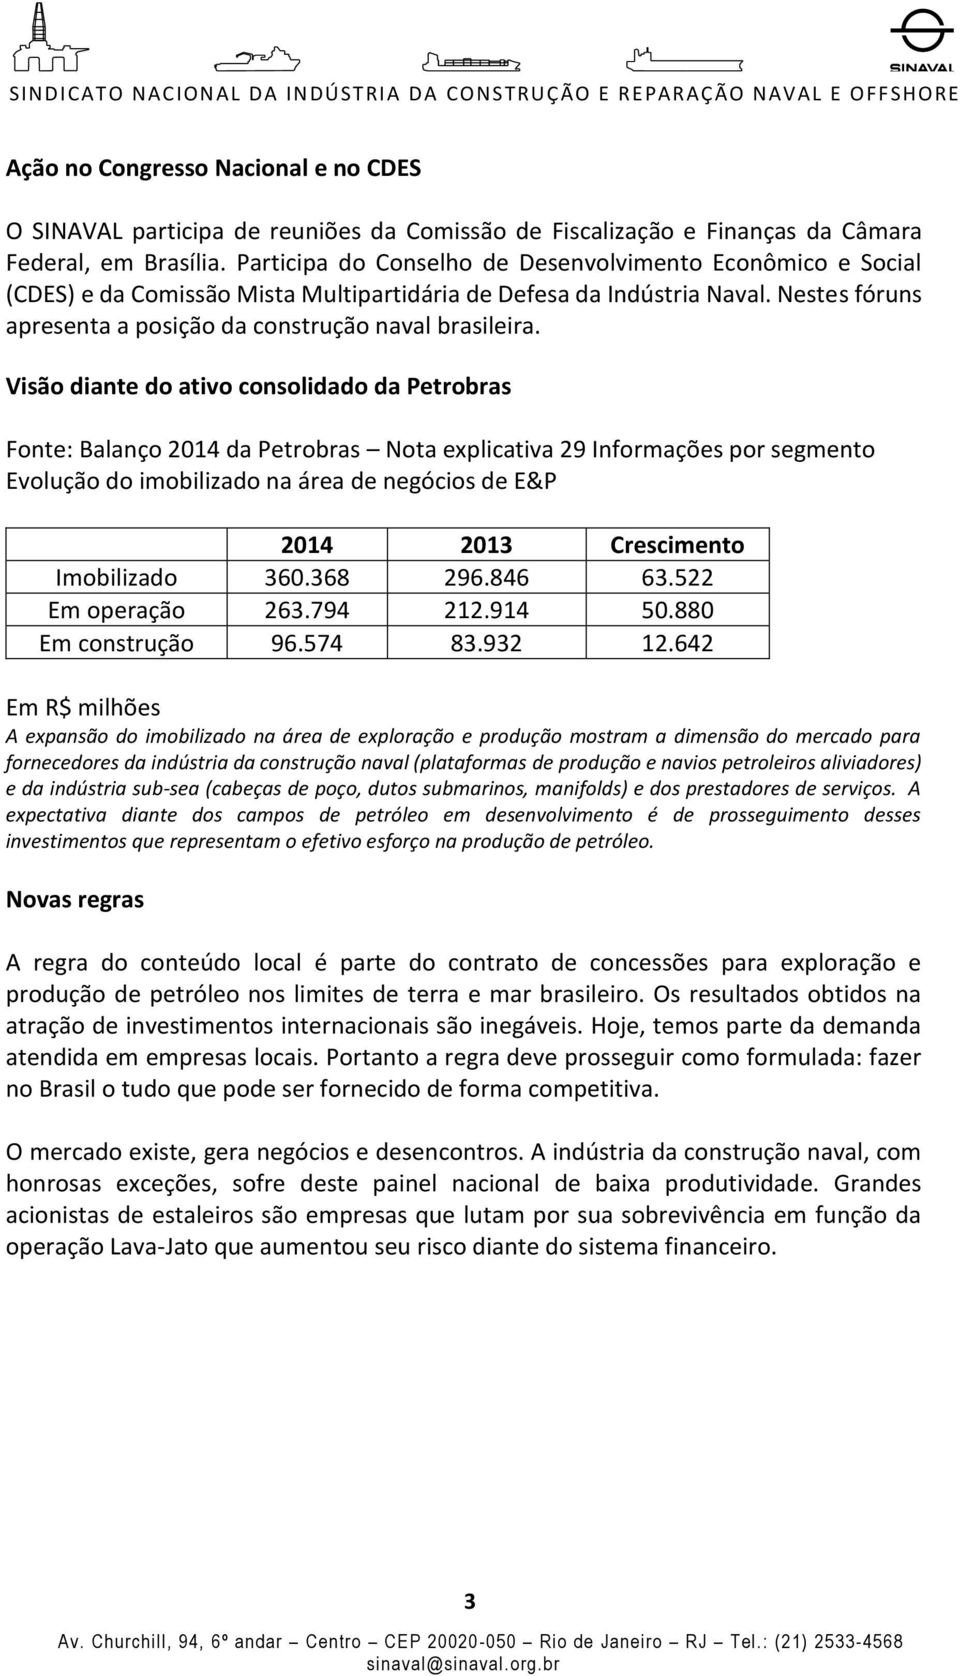 Visão diante do ativo consolidado da Petrobras Fonte: Balanço 2014 da Petrobras Nota explicativa 29 Informações por segmento Evolução do imobilizado na área de negócios de E&P 2014 2013 Crescimento